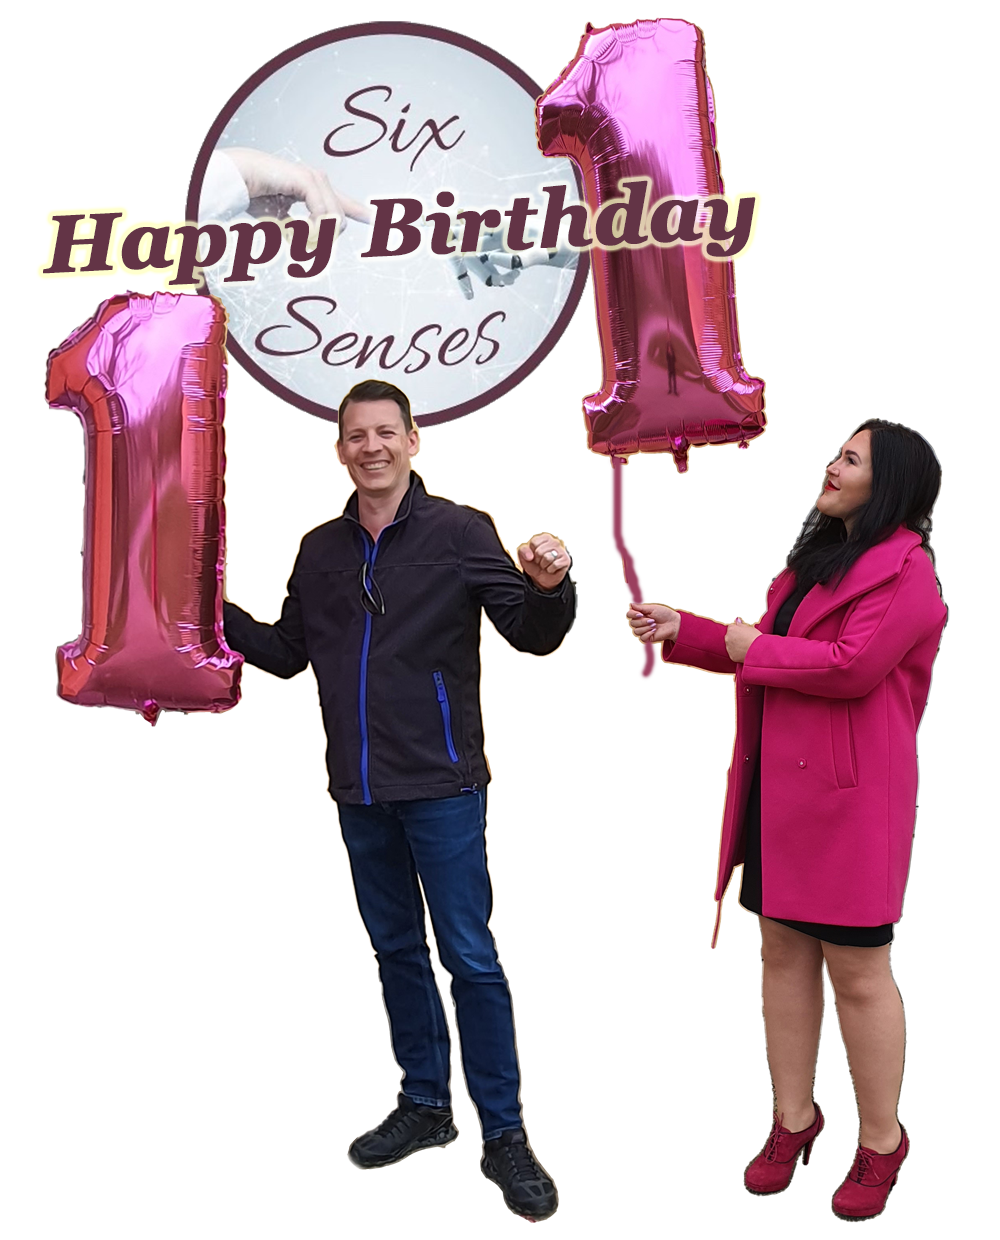 Happy Birthday SixSenses - Alles gute zum Einjährigen!